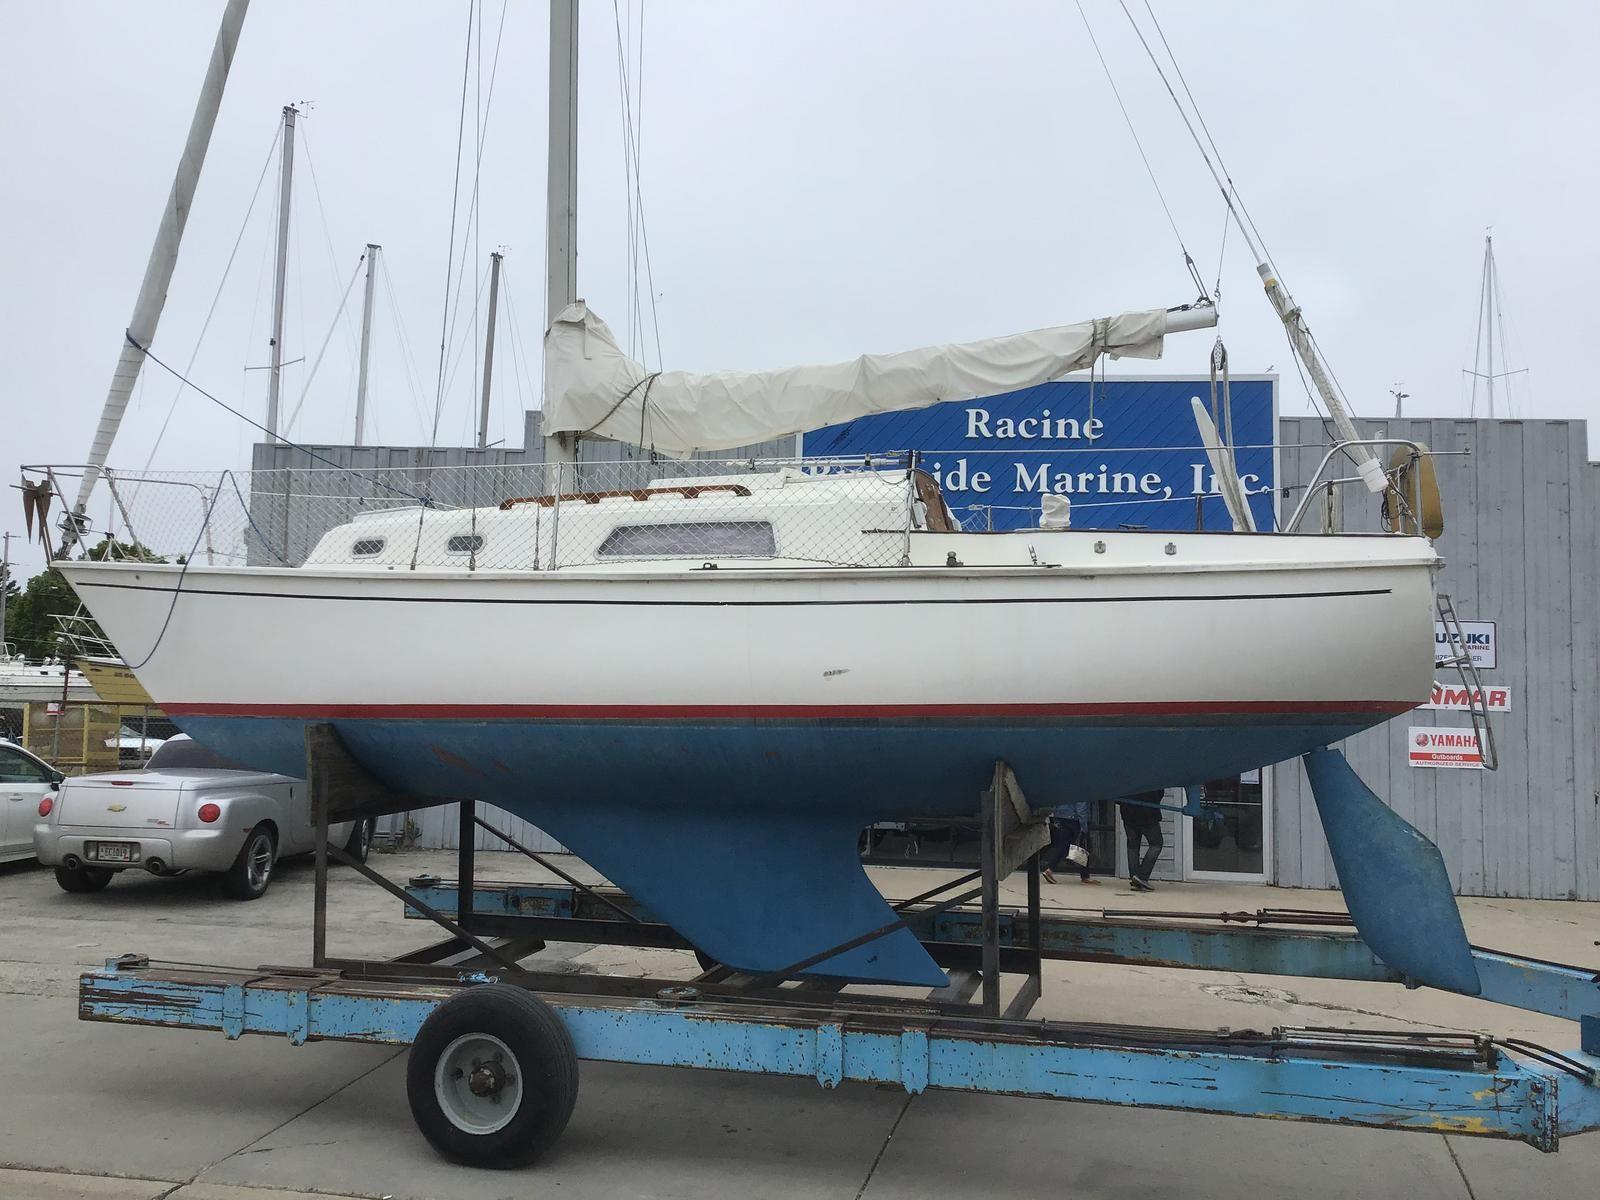 1976 30 foot pearson sailboat